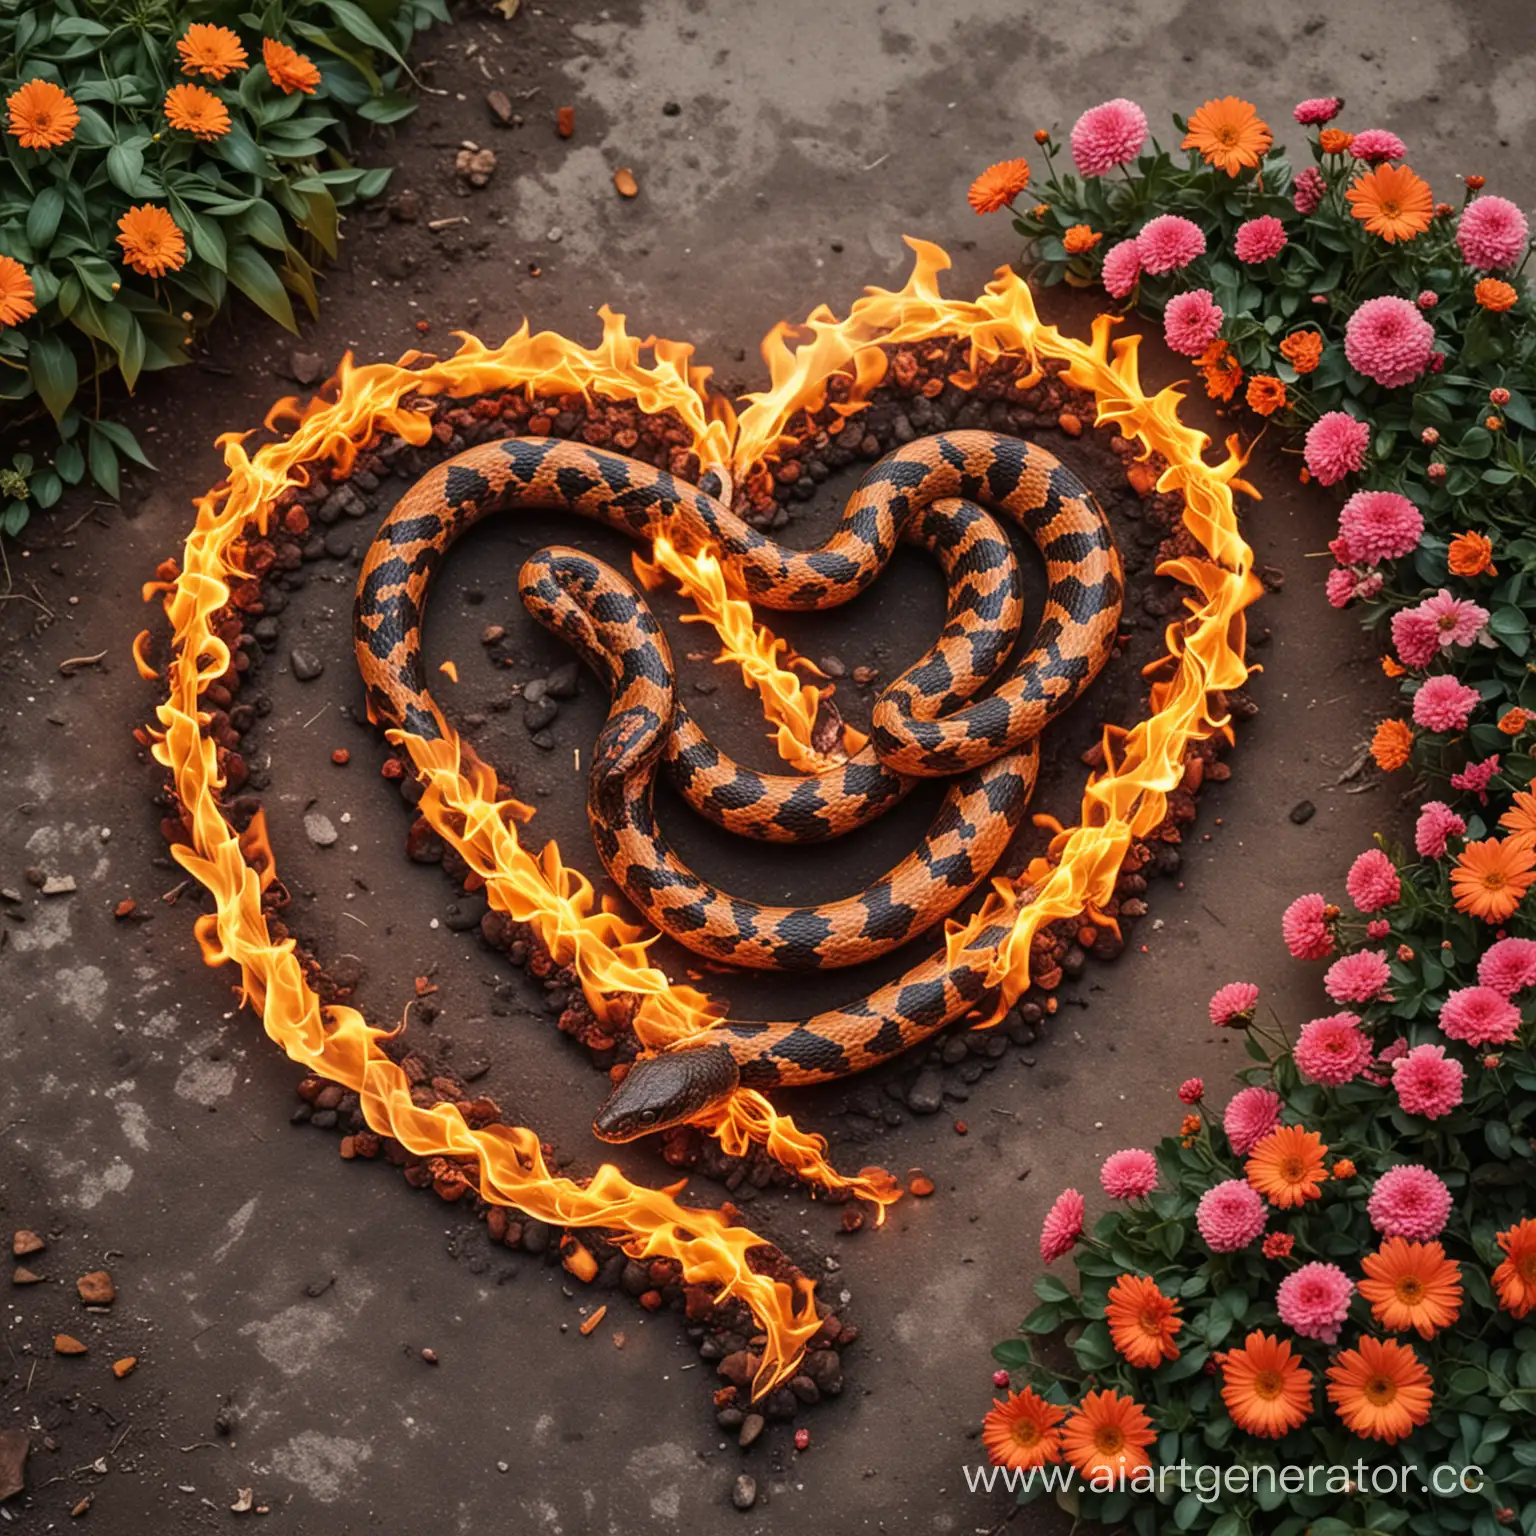 Змея горящая пламенем в форме сердца.На фоне цветы
